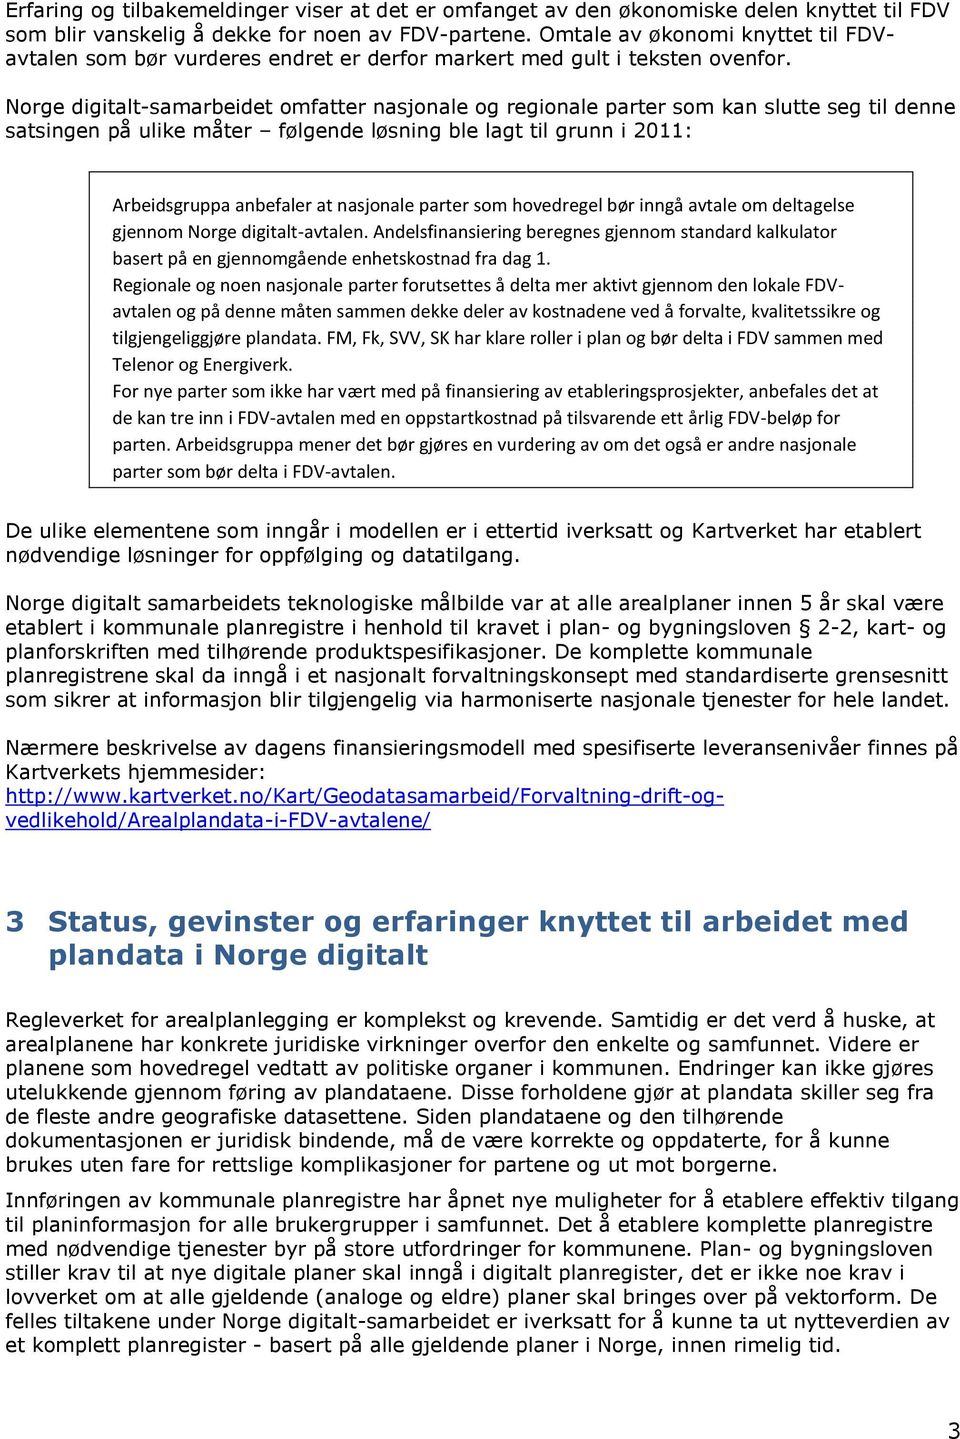 Norge digitalt-samarbeidet omfatter nasjonale og regionale parter som kan slutte seg til denne satsingen på ulike måter følgende løsning ble lagt til grunn i 2011: Arbeidsgruppa anbefaler at